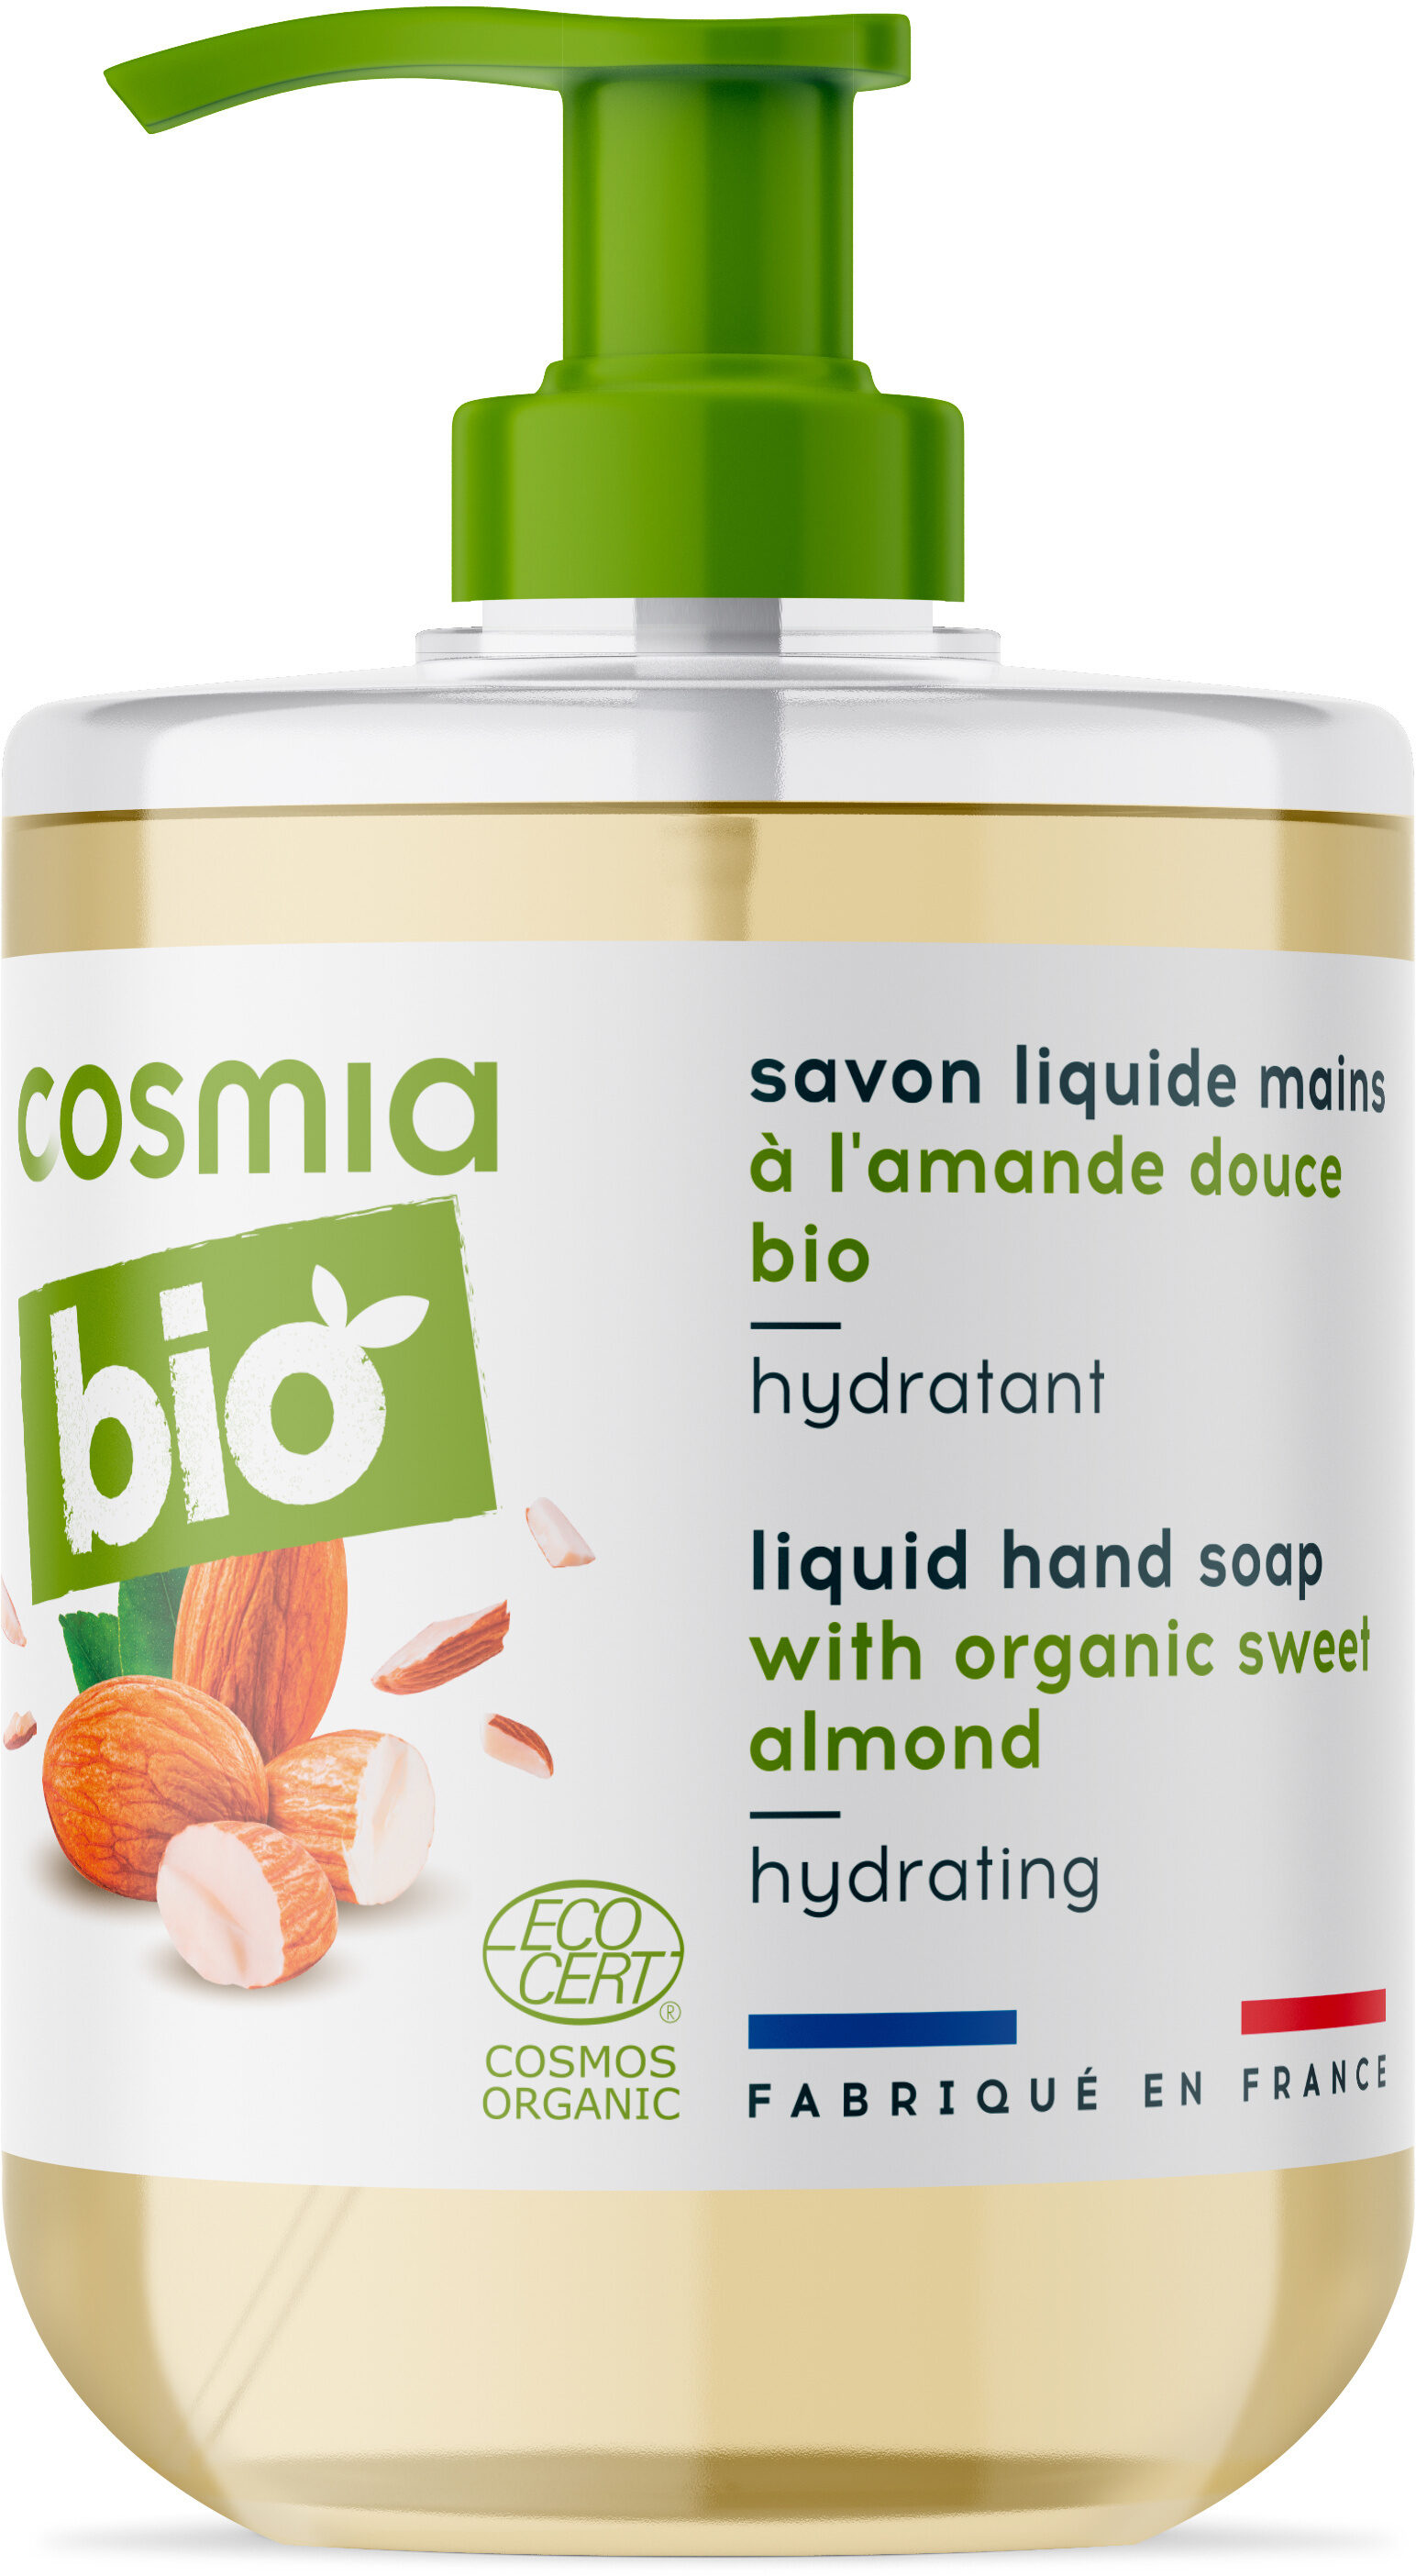 Bio savon liquide mains a l'amande douce bio - 製品 - fr